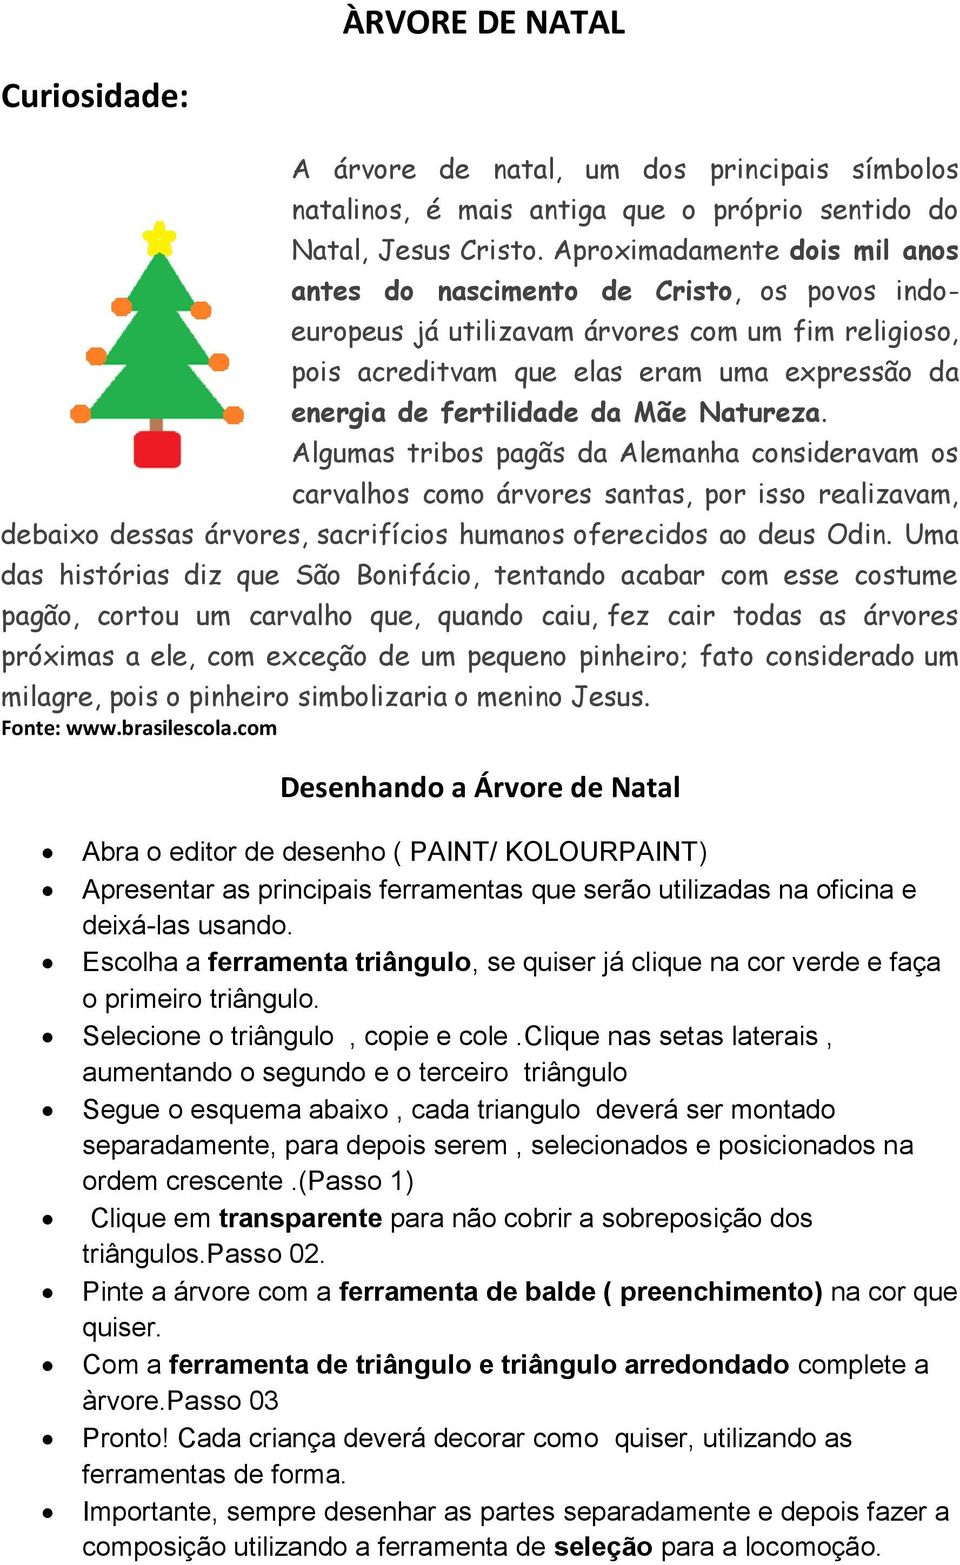 ÀRVORE DE NATAL. Desenhando a Árvore de Natal - PDF Download grátis